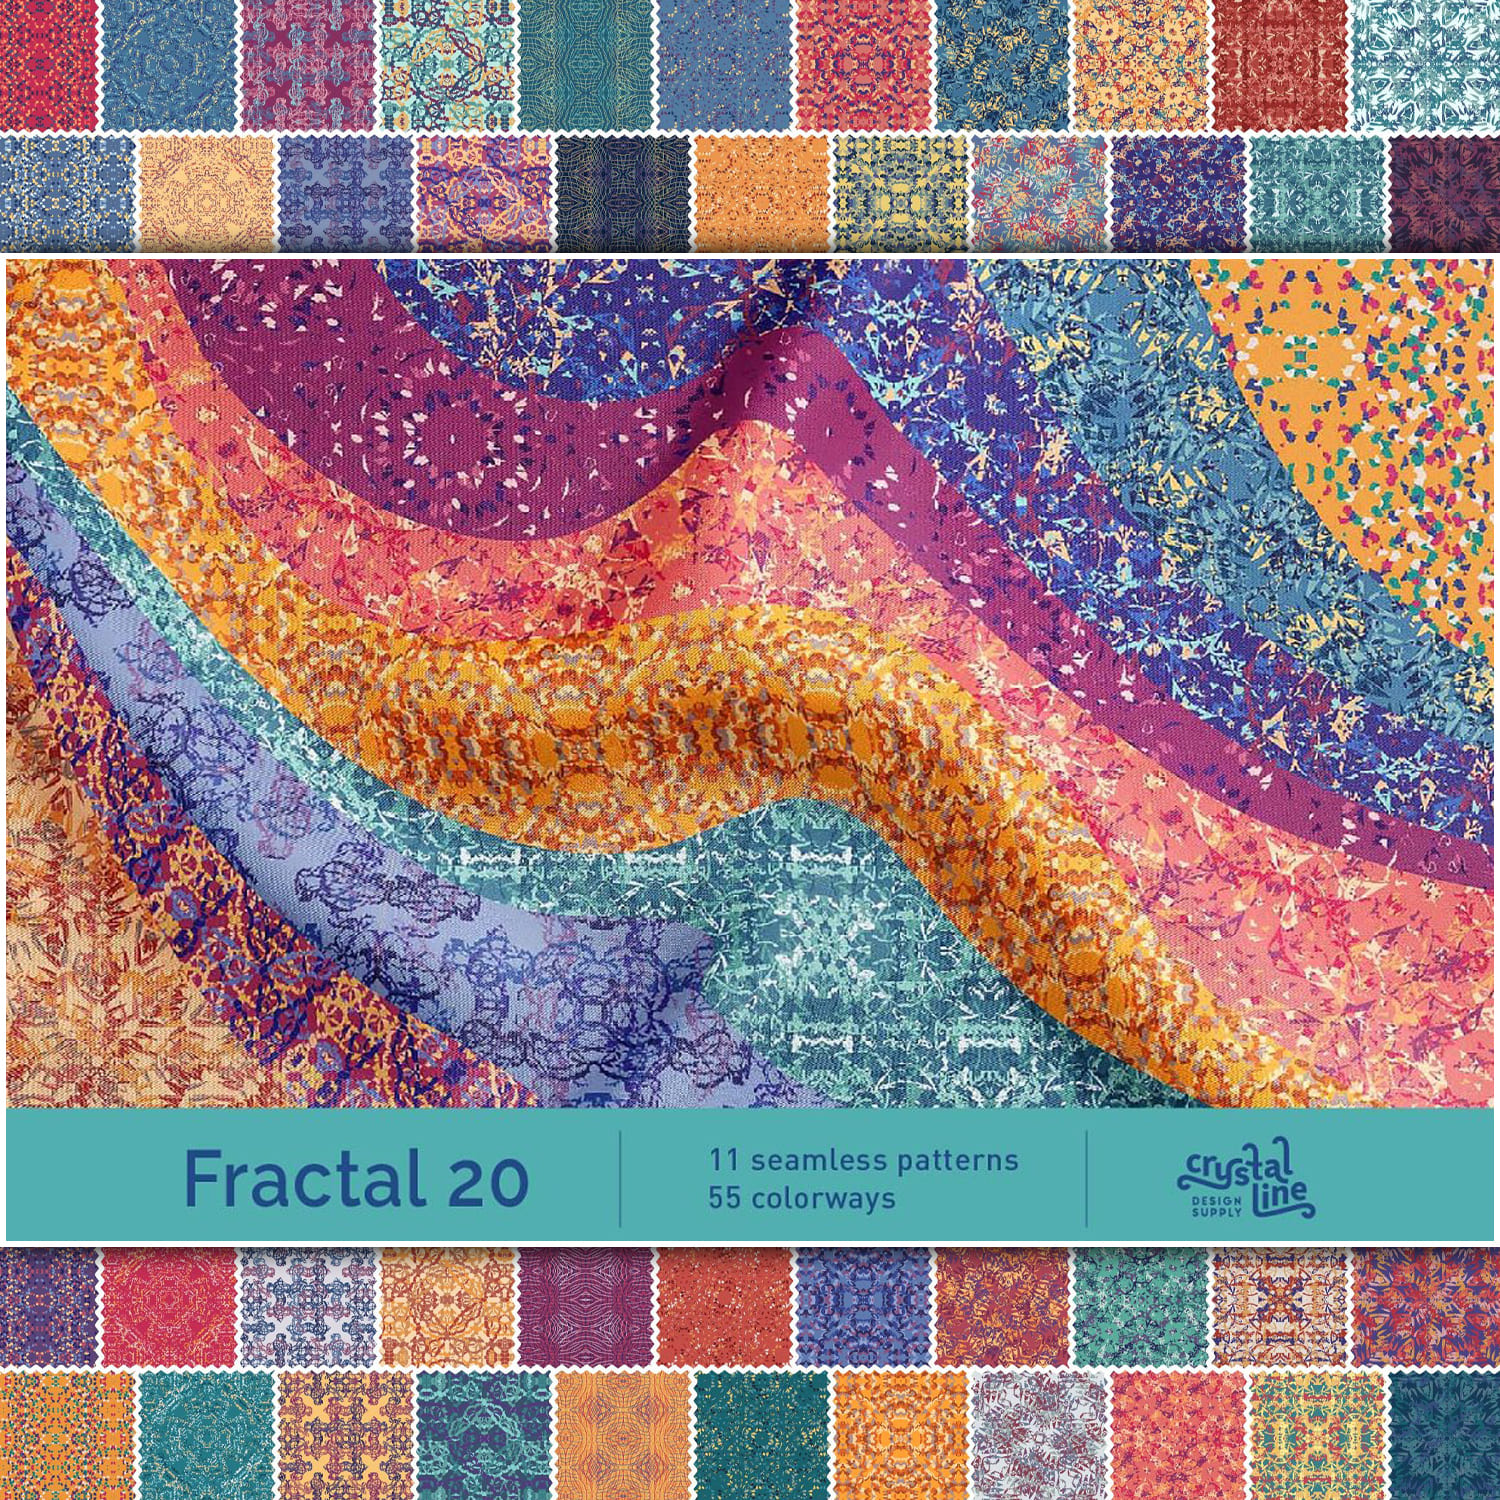 Fractal Patterns 20 cover image.